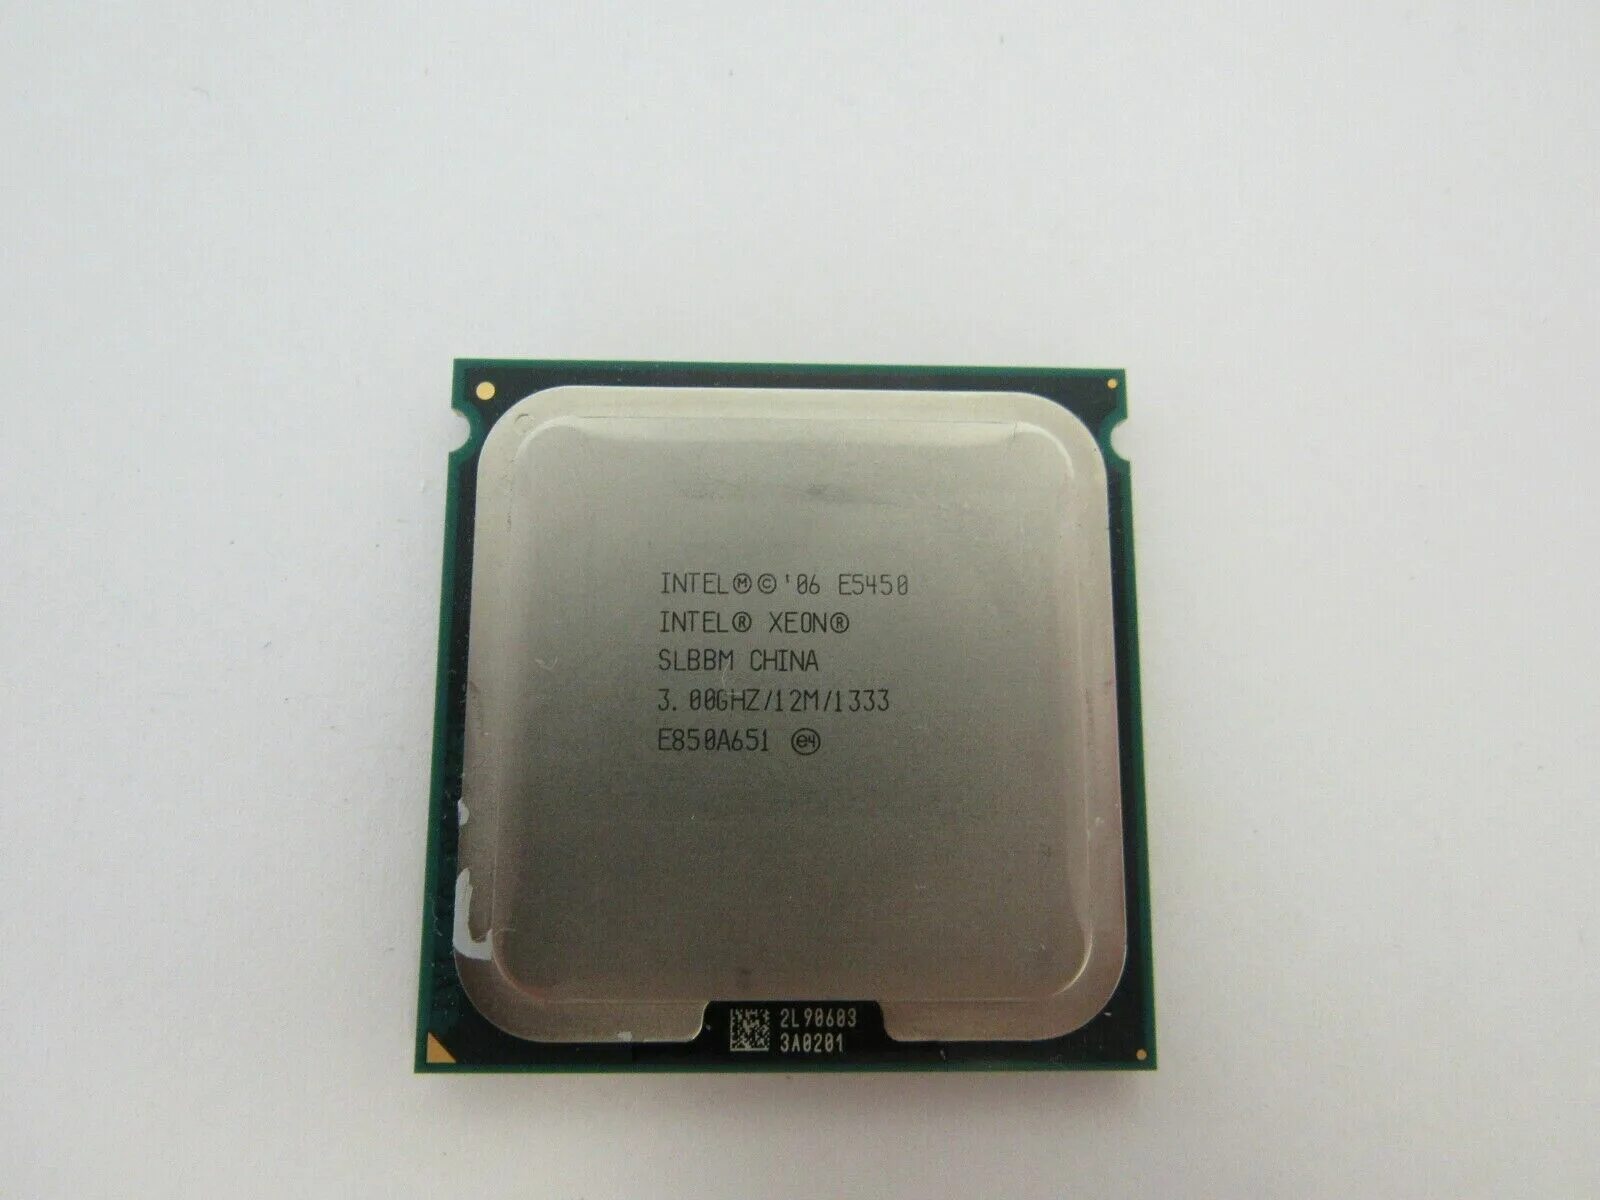 Intel Core 2 Quad q9300. Процессор Intel Core 2 Duo e4700. Intel 06 e5400 Pentium. Процессор Intel Pentium 4 531 Prescott. Intel costa rica